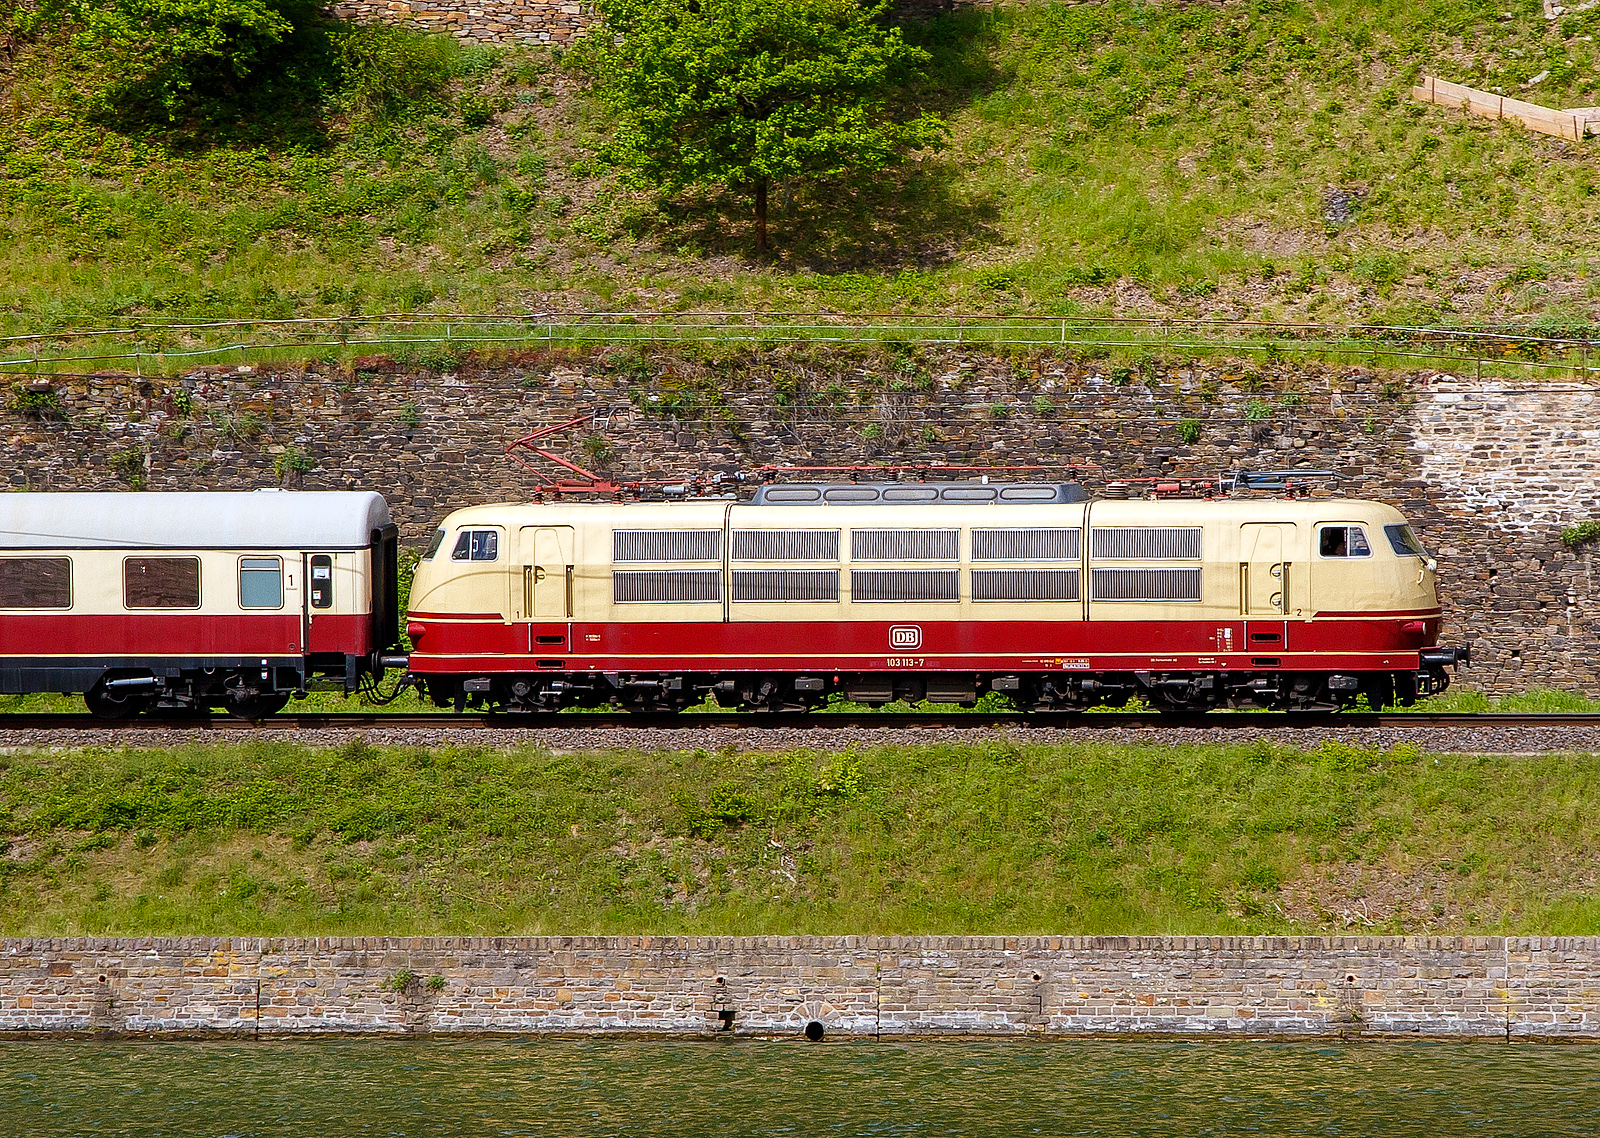 Dampfspektakel 2018 - Die 103 113-7 (91 80 6103 113-7 D-DB) vom DB-Museums in Koblenz mit ihrem kurzem TEE (Trans Europ Express) Trier - Wittlich - Koblenz, fhrt am 28.04.2018 zwischen Kattenes und Lf in Richtung Koblenz. 

Die 103.1 wurde 1970 von Henschel in Kassel unter der Fabriknummer 31431 gebaut, der elektrische Teil ist von Siemens. Die E-Loks der BR 103 sind die weltweit strkste einteilige Lokomotiven Sie haben eine Leistung von 10.400 kW (14.140 PS) die auf 9.000 kW (12.236 PS) begrenzt wurden.
